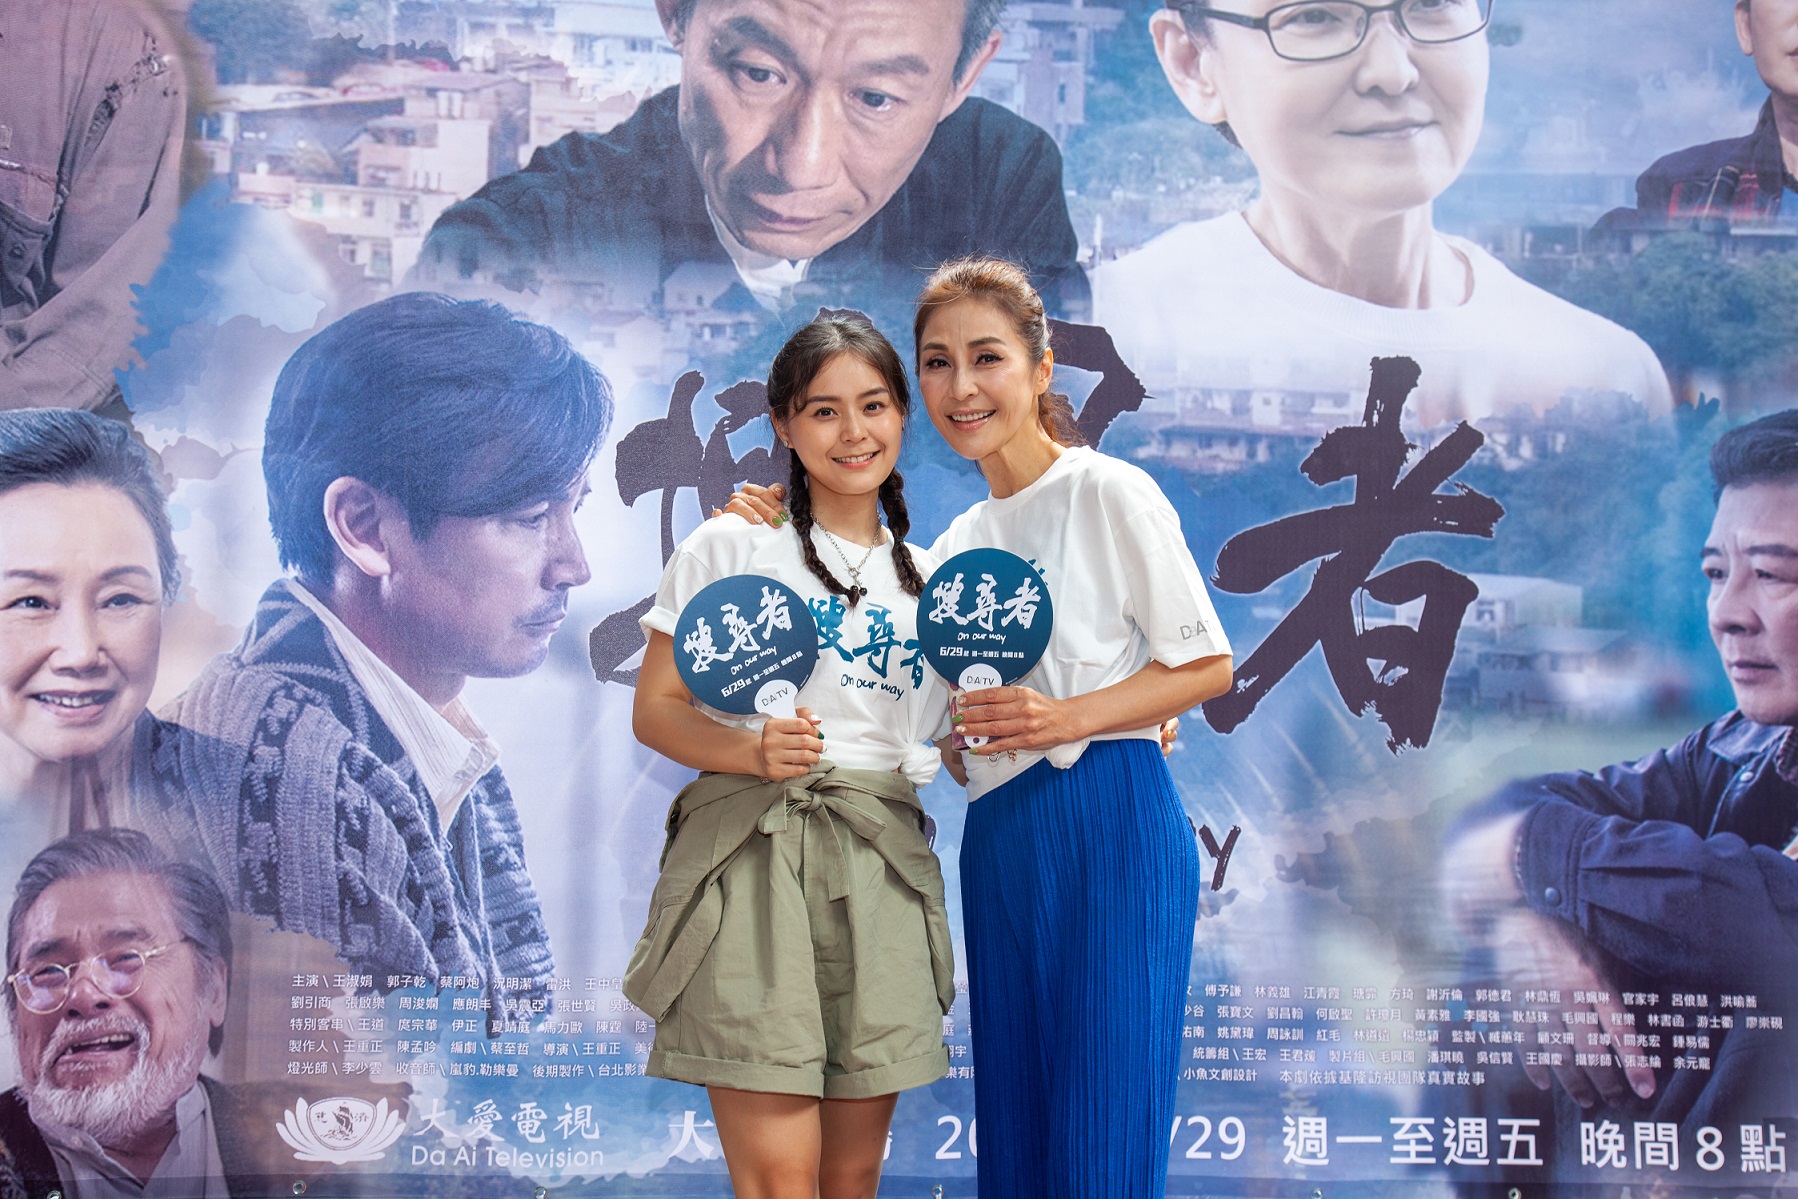 梁佑南(右)與方琦母女檔皆參與《搜尋者》演出